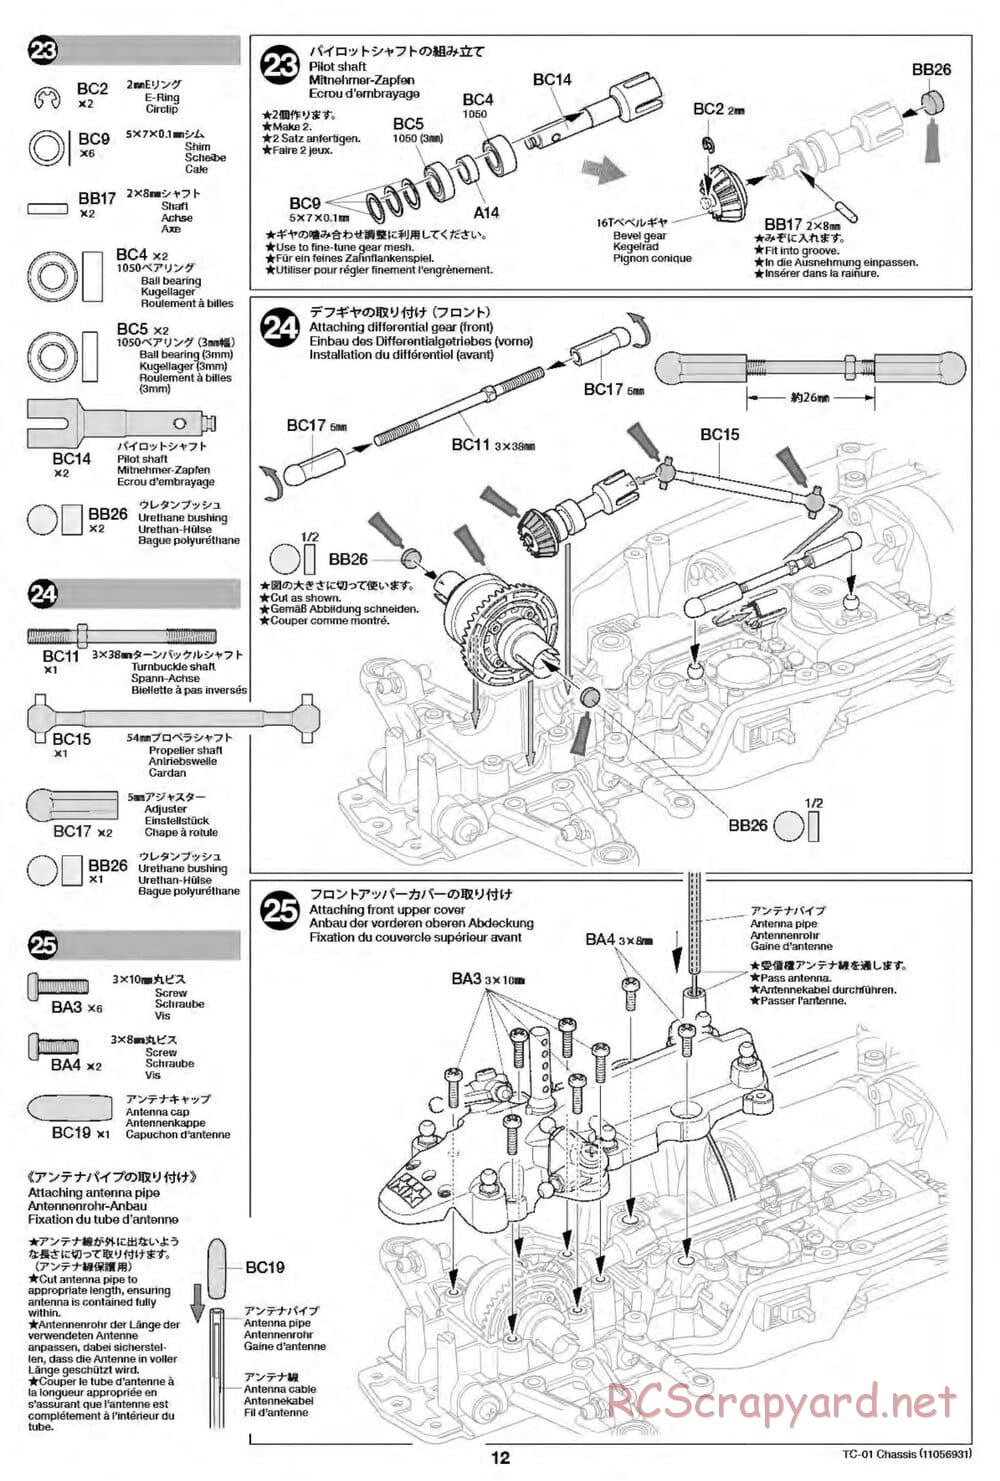 Tamiya - TC-01 Chassis - Manual - Page 12